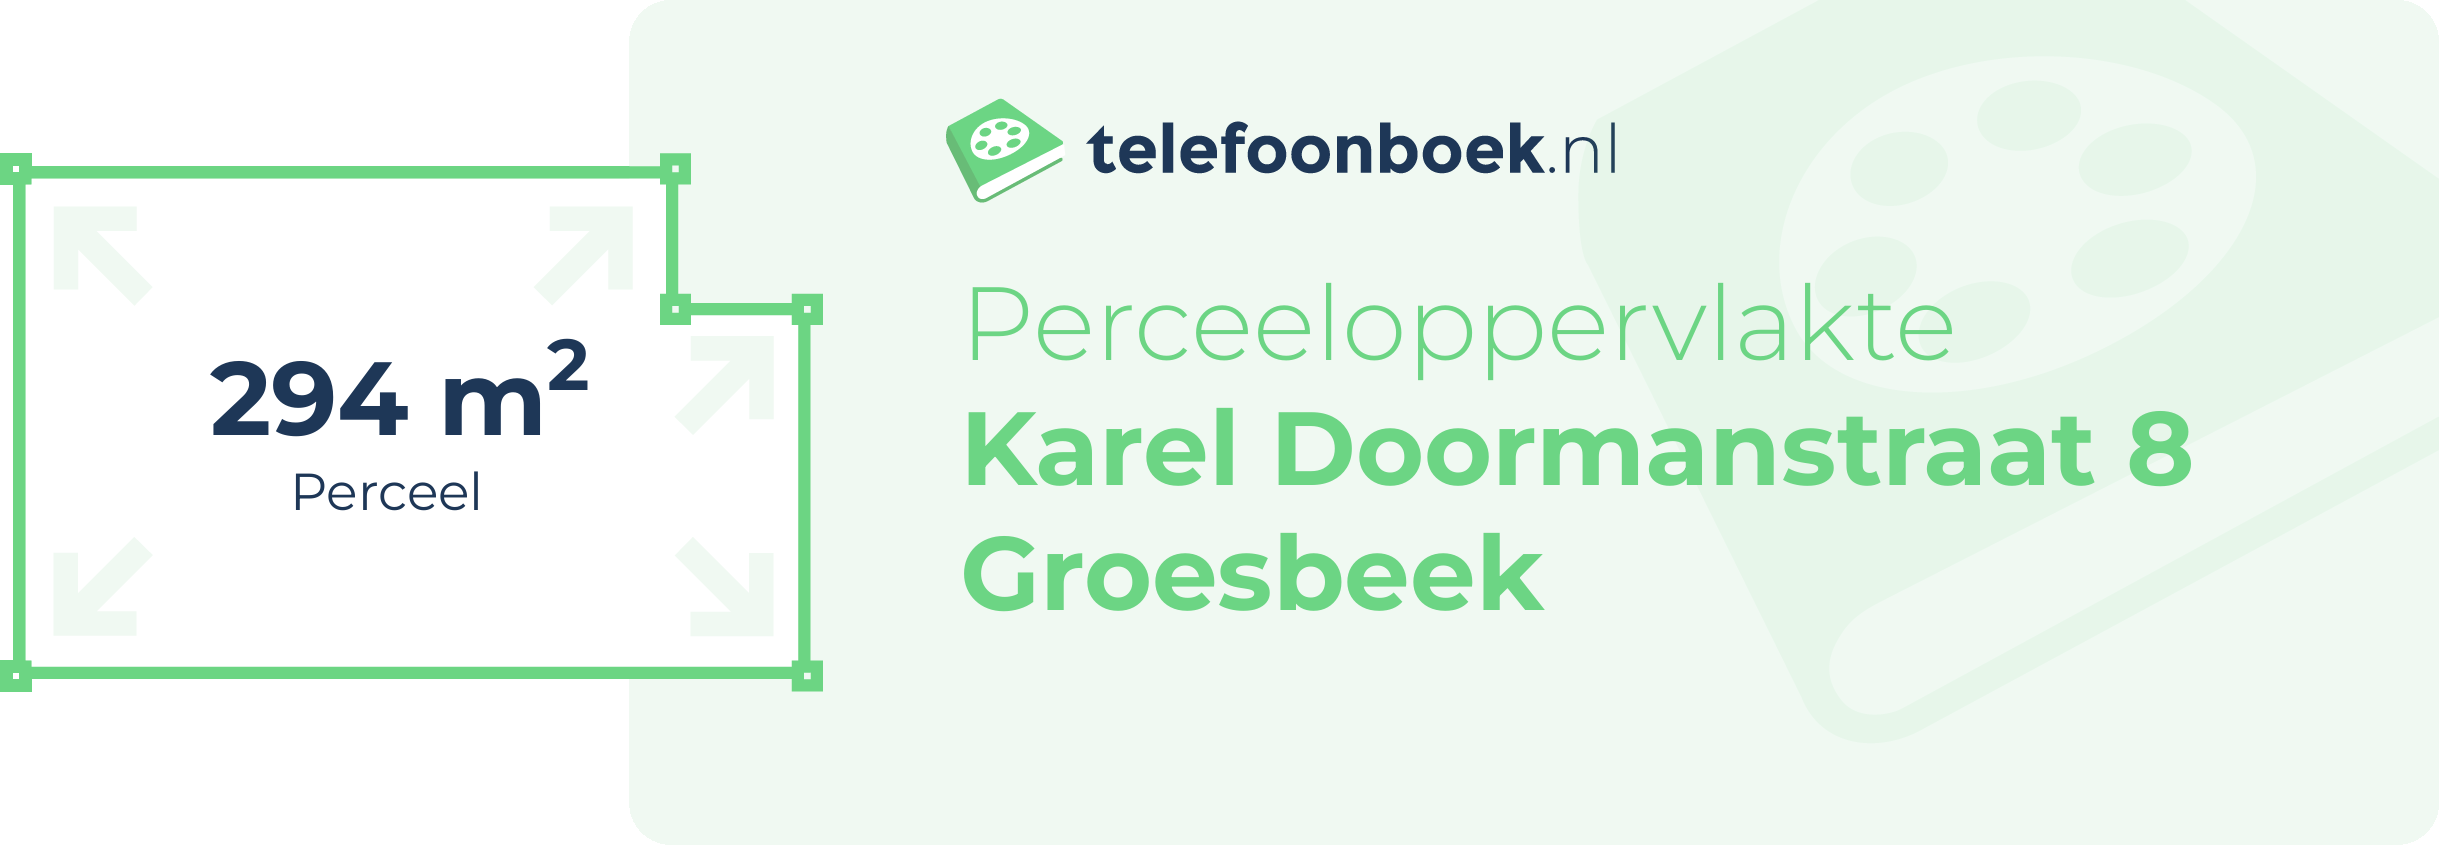 Perceeloppervlakte Karel Doormanstraat 8 Groesbeek